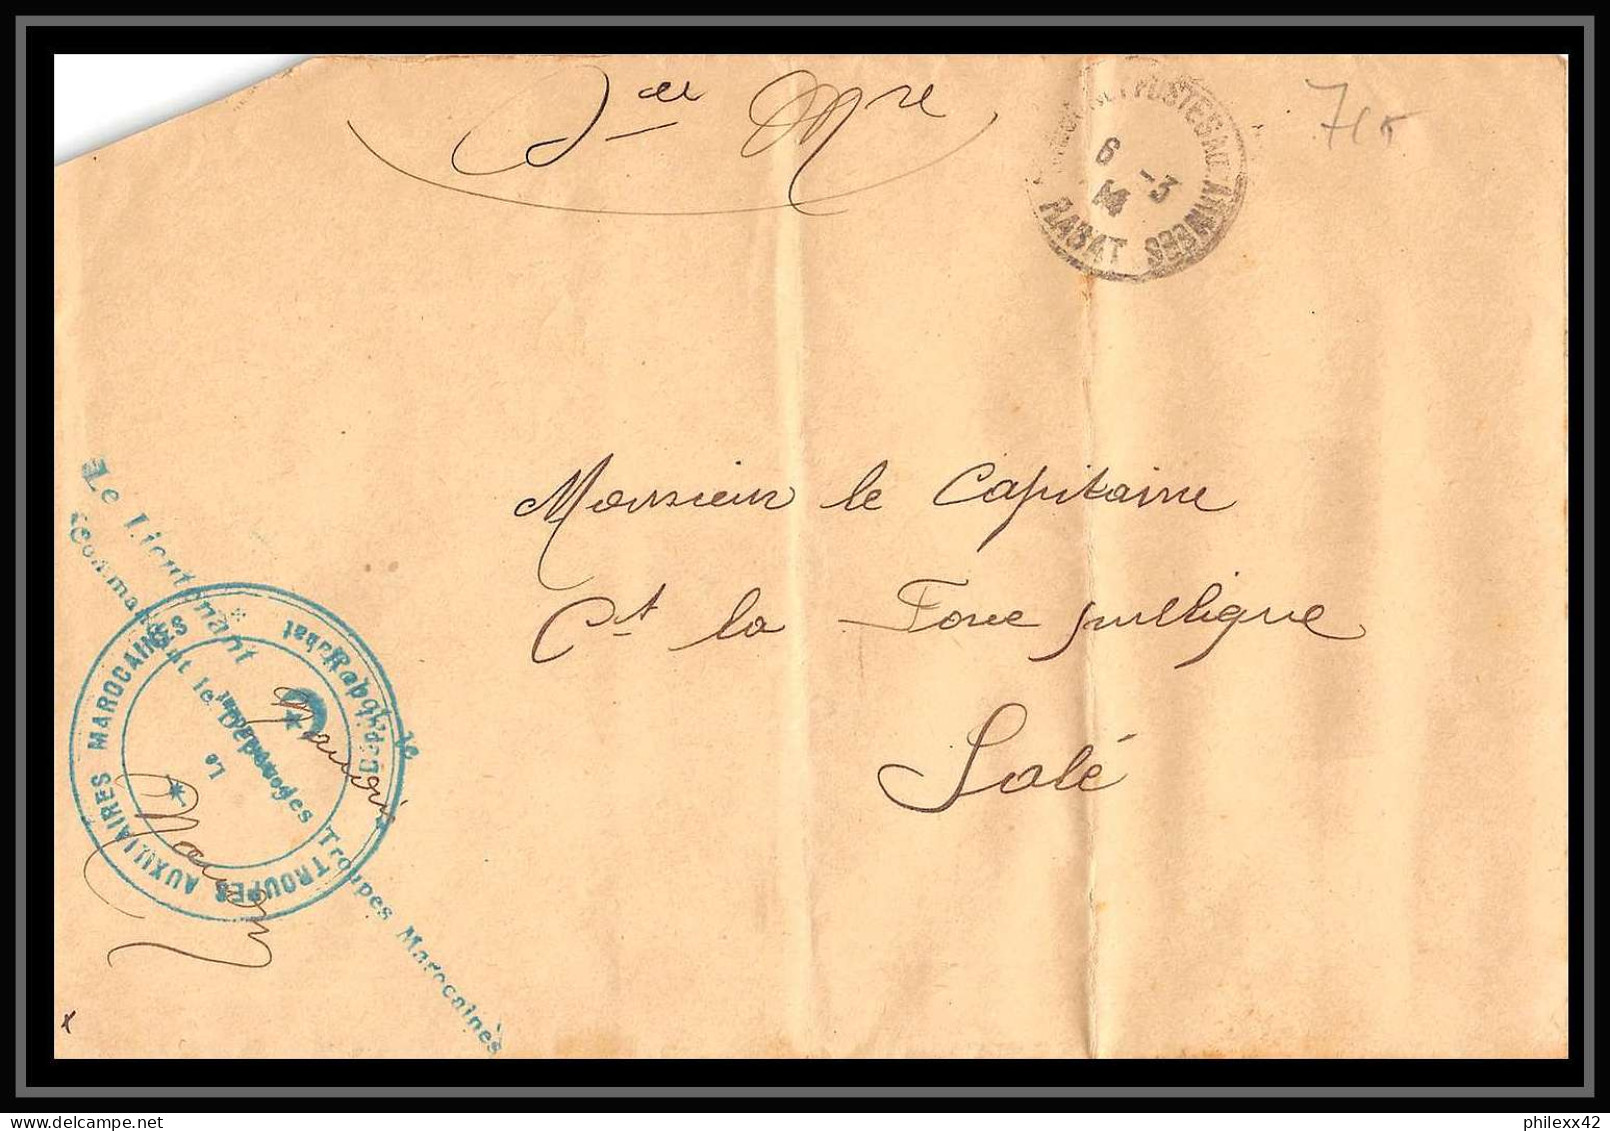 0727 Lot 5 Lettres Region Chaouia Bureaux De Comptabilité Casablanca Lettre Cover Occupation Du Maroc War 2 Signées - Collections